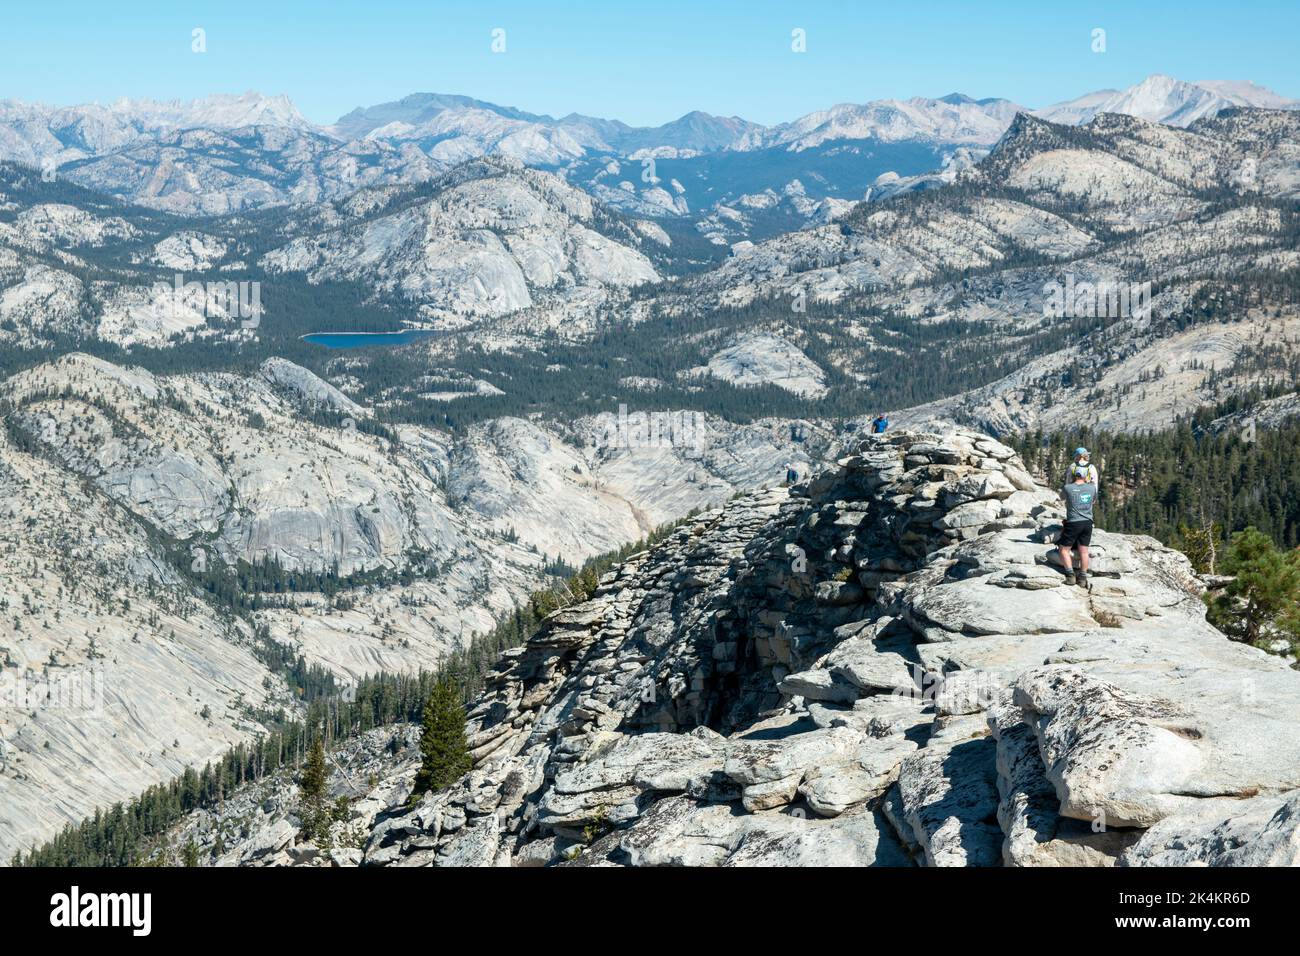 Der Weg zu Clouds Rest, einem Berggipfel im Yosemite National Park, CA, der einen Panoramablick auf den Park einschließlich Half Dome bietet, ist schwierig. Stockfoto